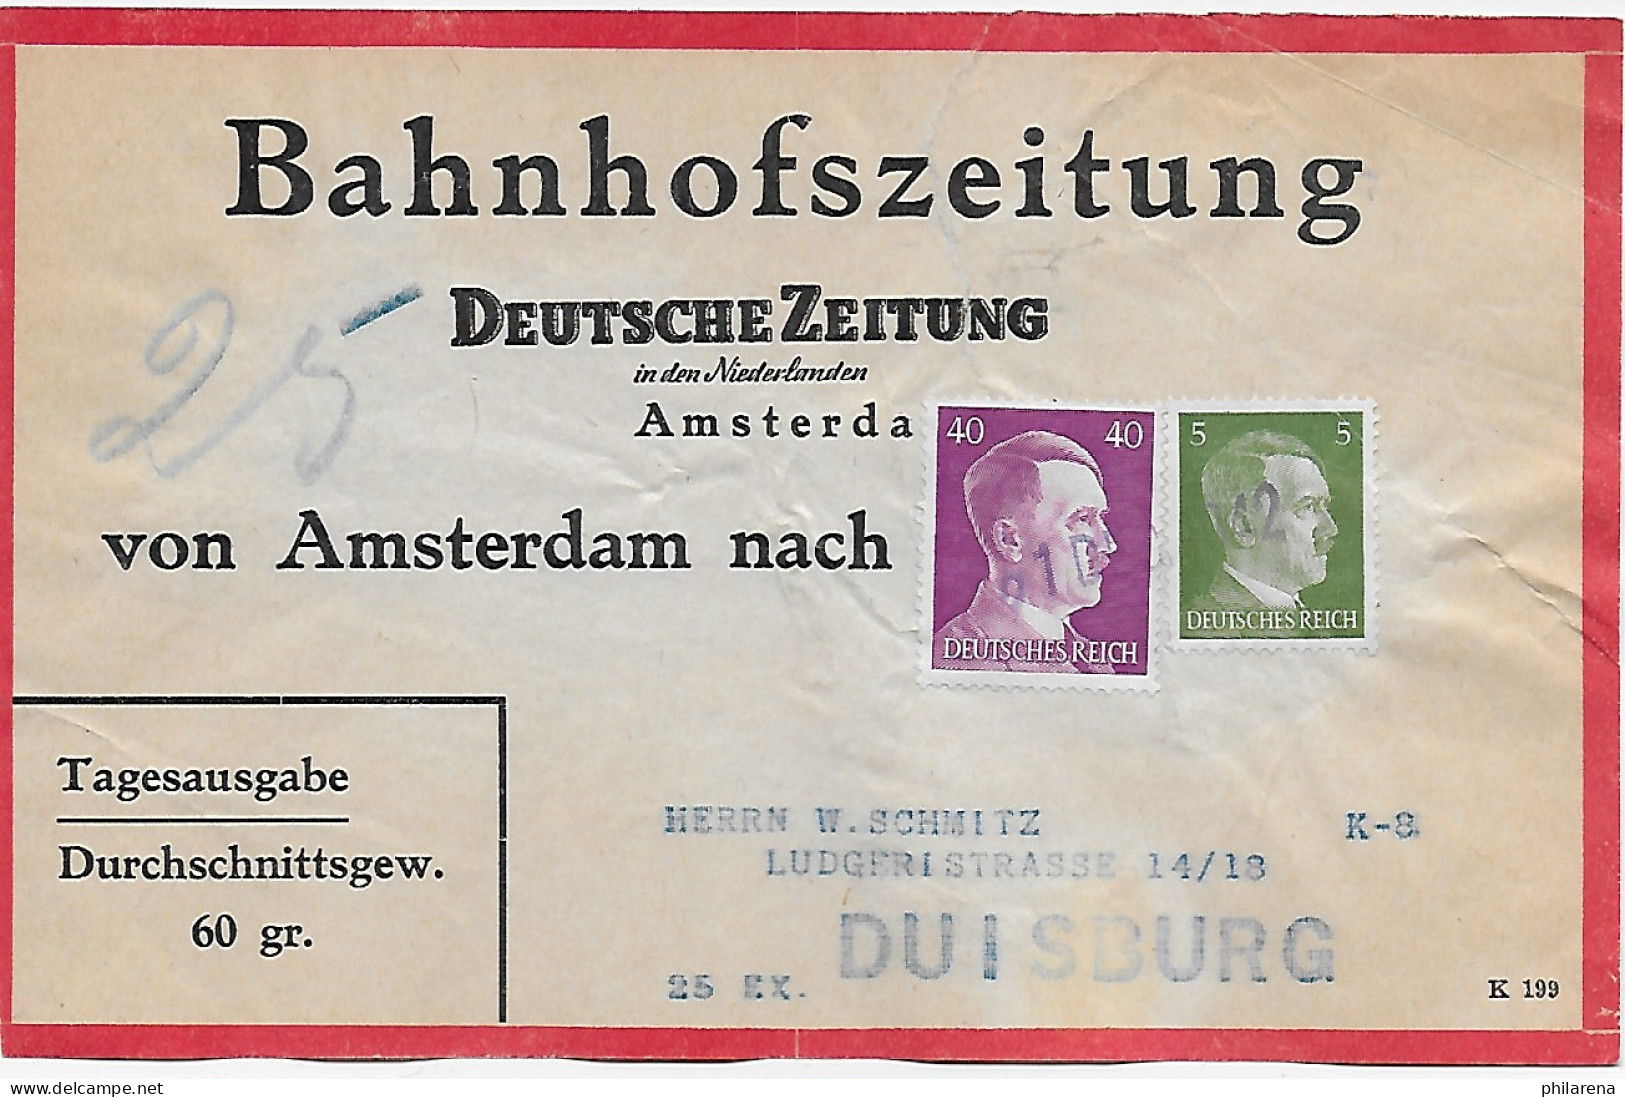 Bahnhofszeitung: 25 Stück Deutsche Zeitung, Niederlande 1942, Feldpost Amsterdam - Feldpost 2da Guerra Mundial